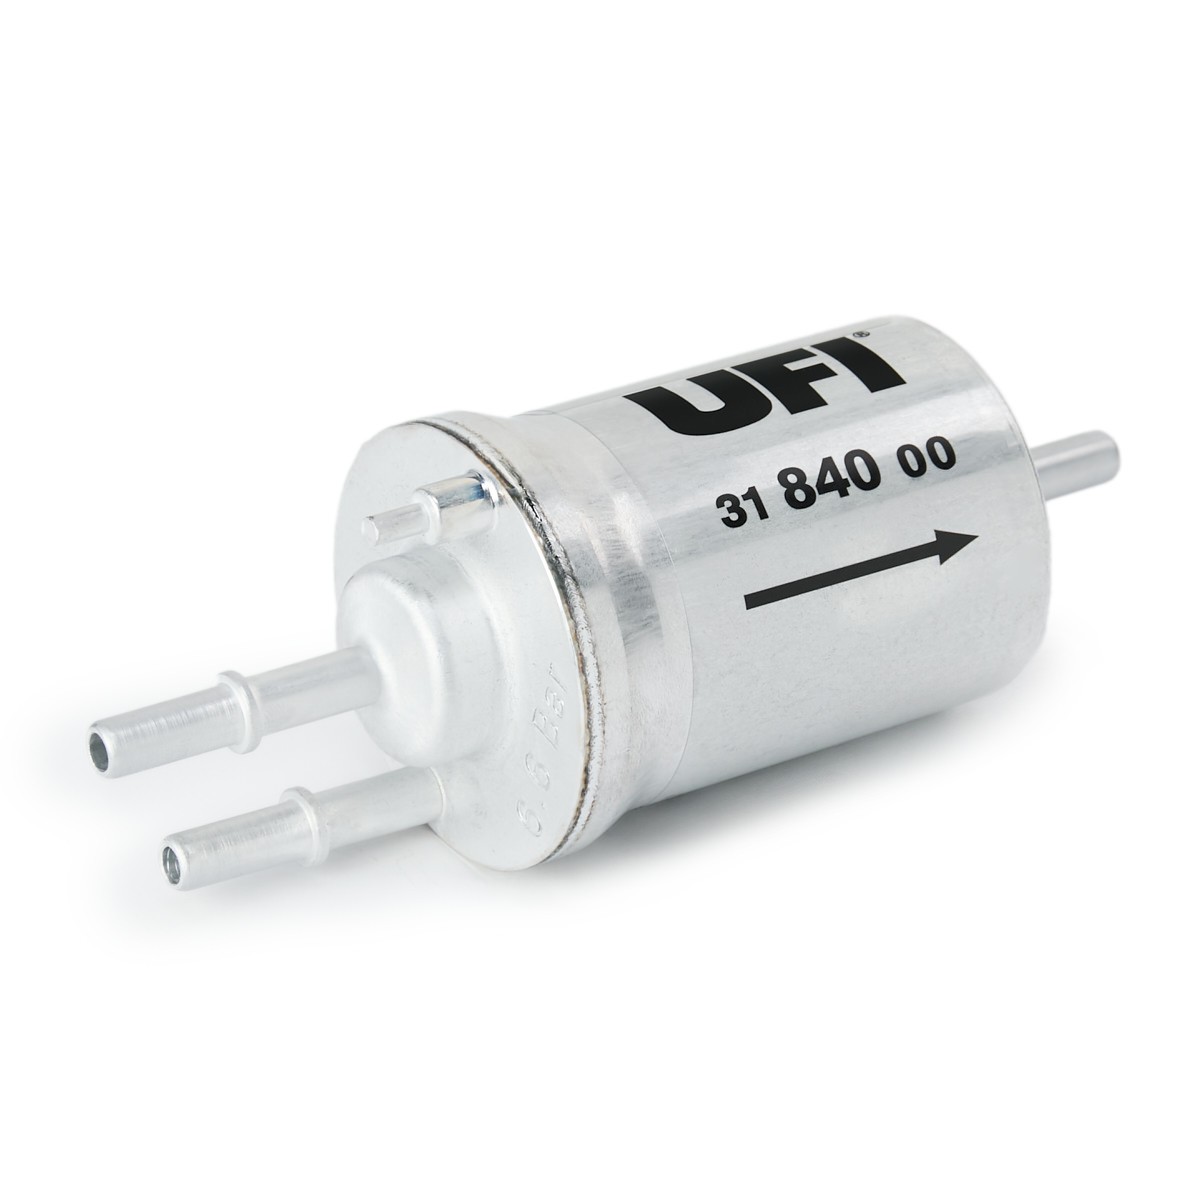 Original 31.840.00 UFI Fuel filters LEXUS